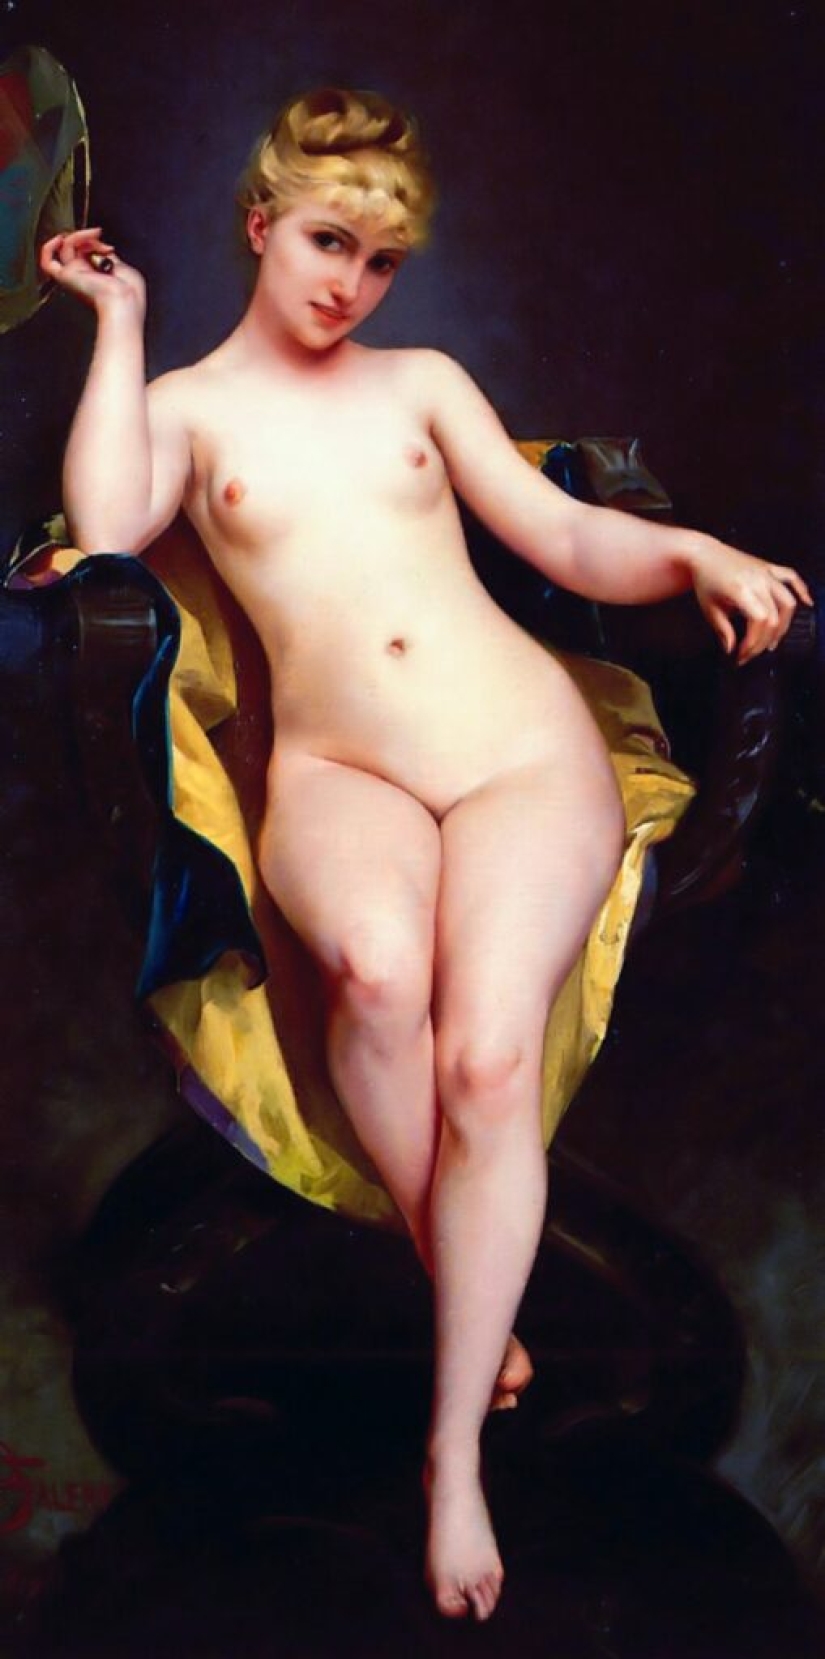 Hadas desnudas del artista Luis Ricardo Falero, quien fundó el estilo de fantasía en la pintura